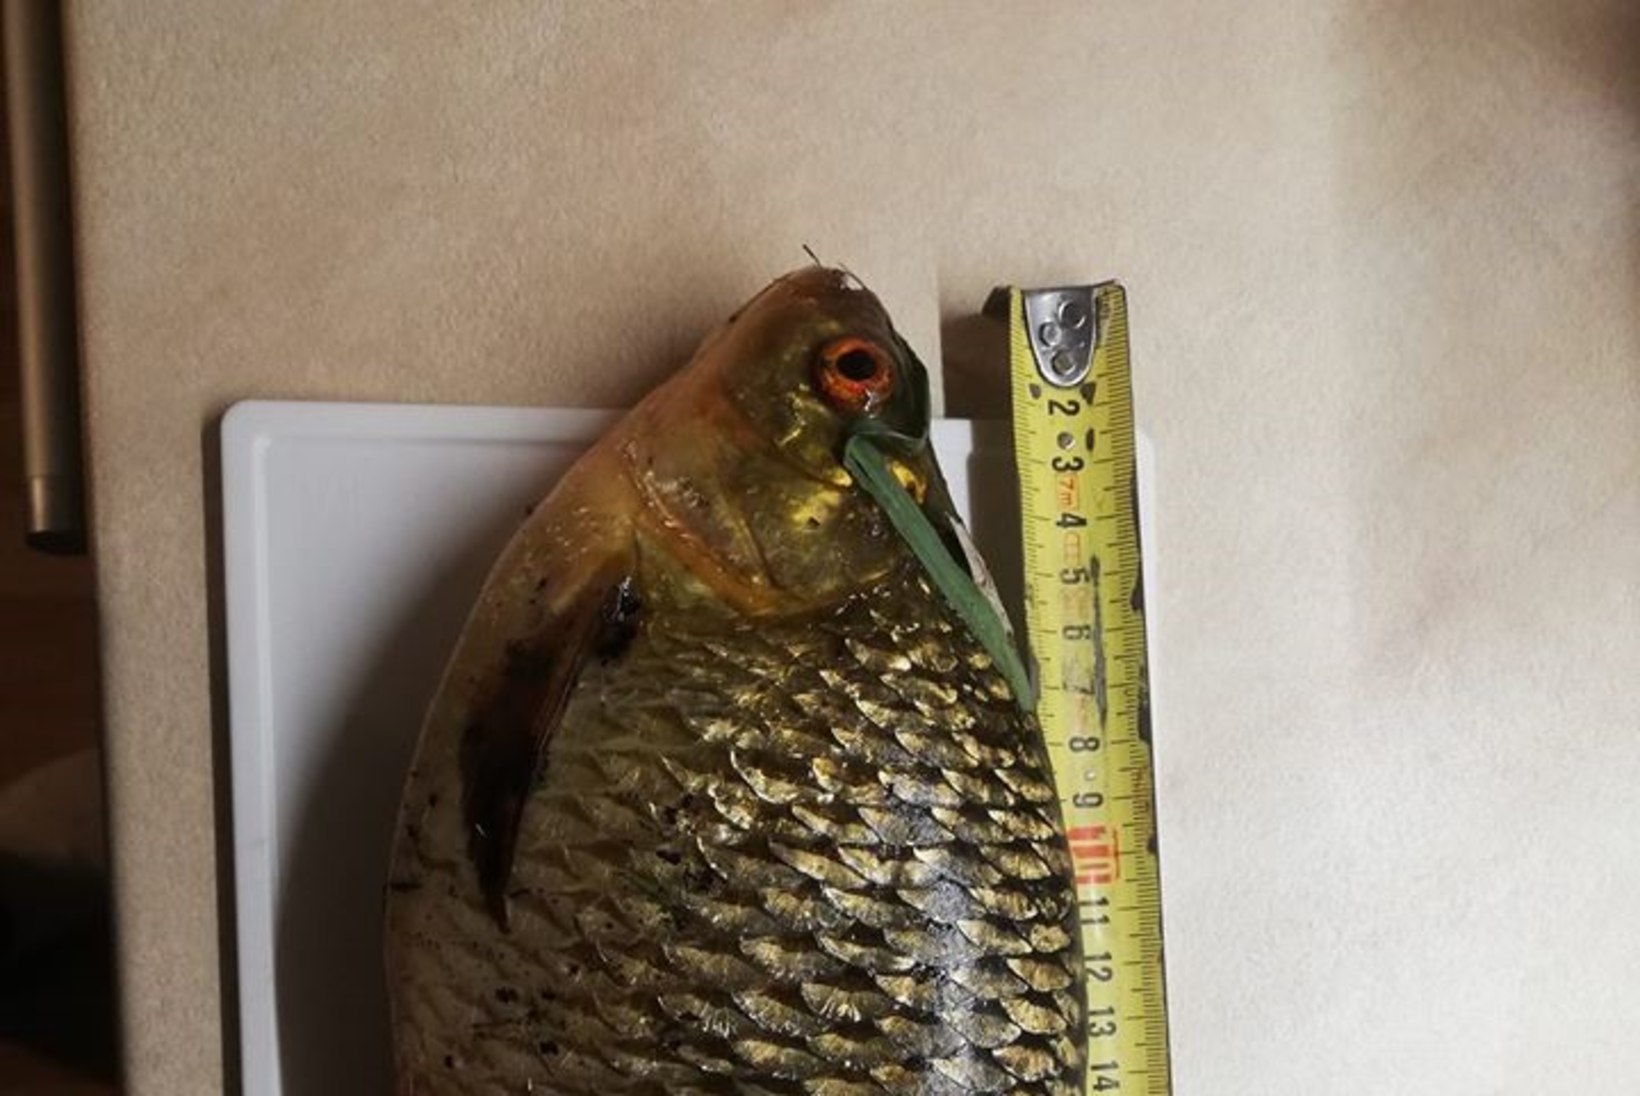 Aasta rekordkala konkurss | Kuu kala on 1,5 kilo kaaluv kuldkoger 